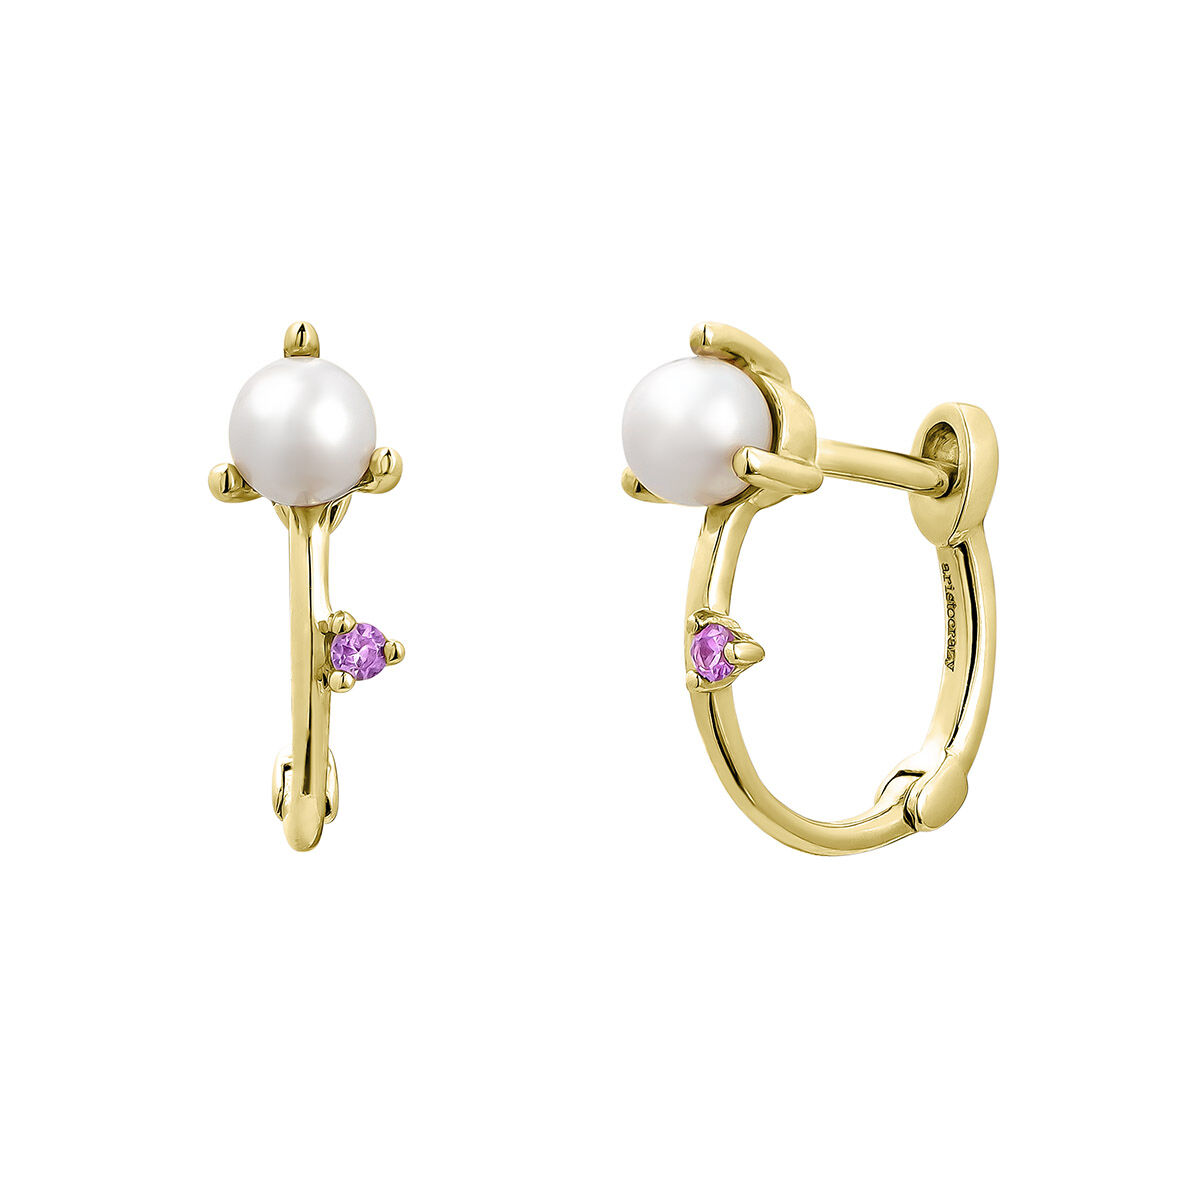 Boucles d'oreilles perle et saphir rose or 9 ct , J04895-02-WP-PS, hi-res